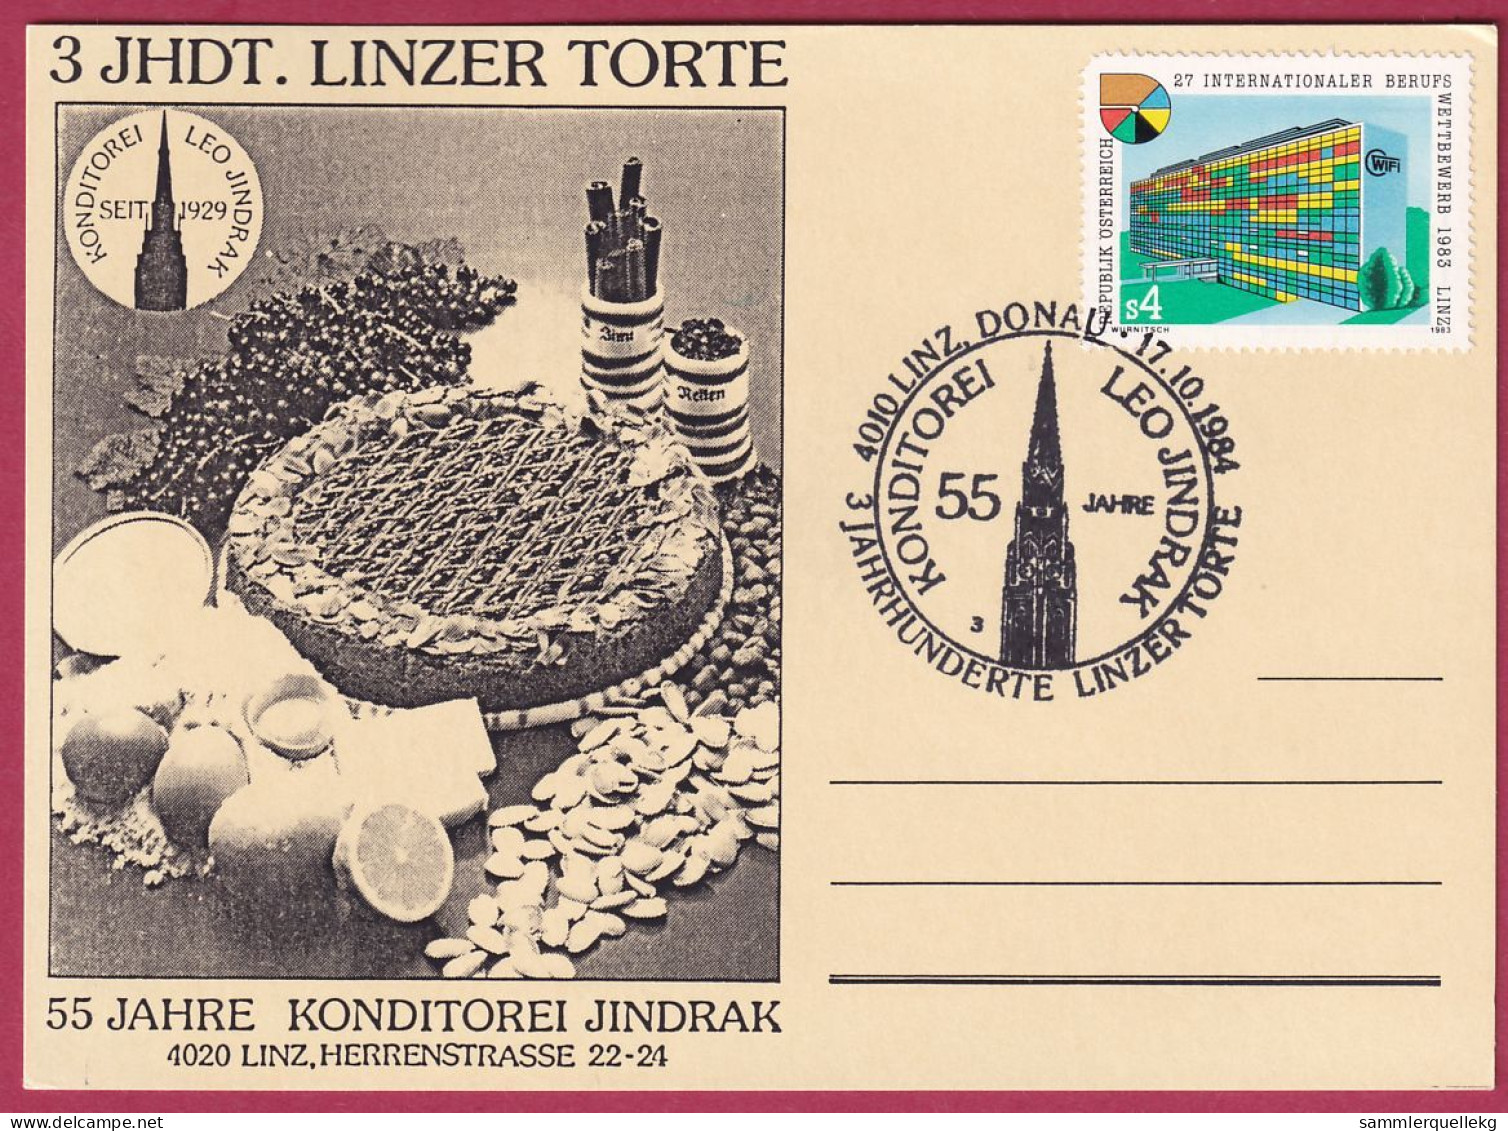 Österreich MNr.1747 Sonderstempel 17. 10. 1984, 55 Jahre Konditorei Jindrak - Linzer Torte - Covers & Documents